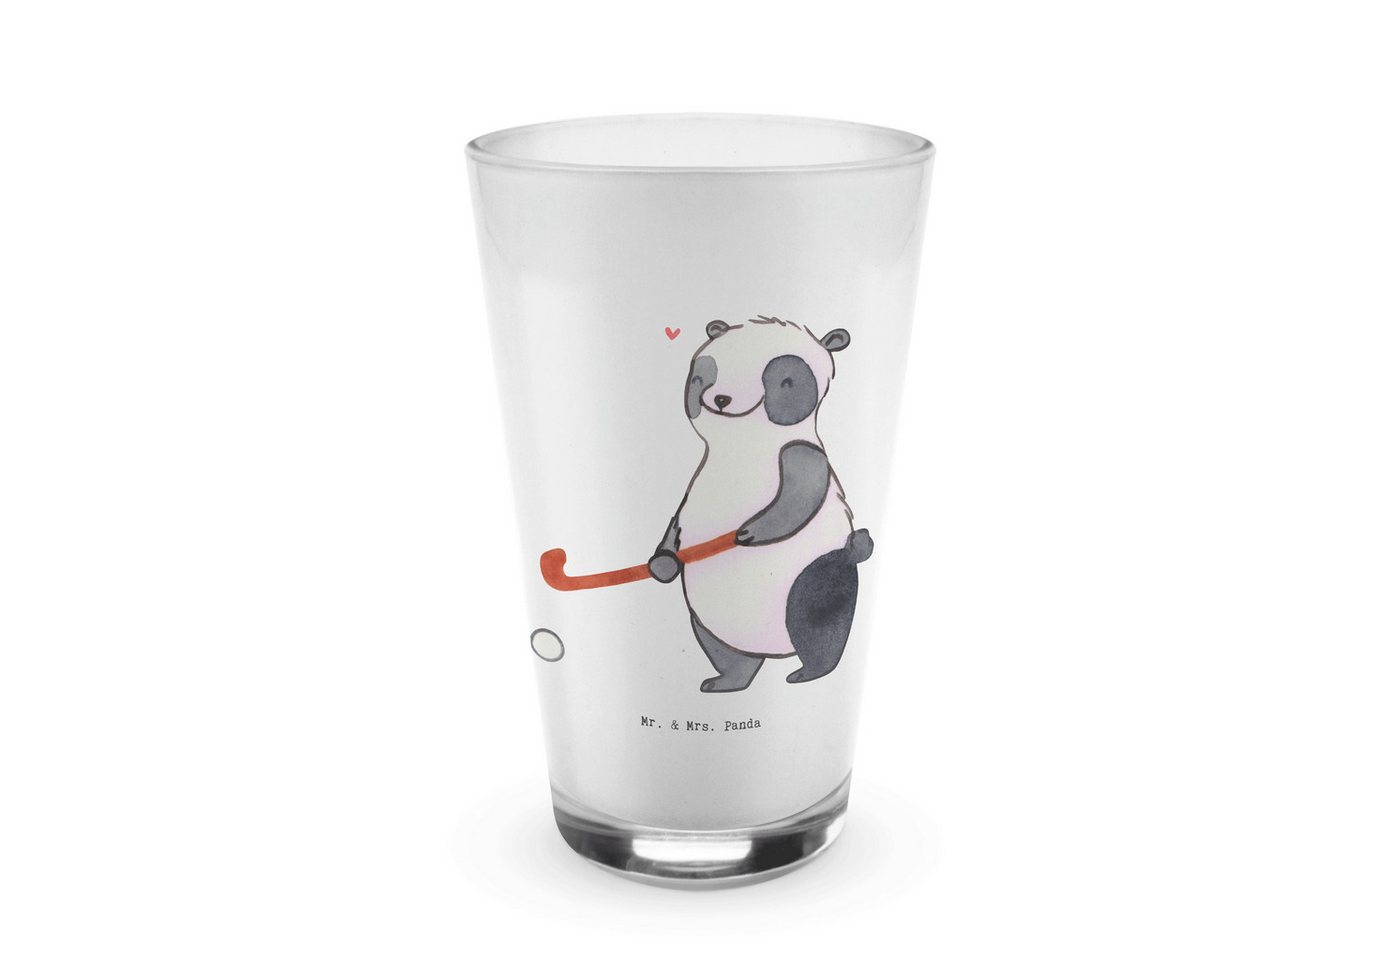 Mr. & Mrs. Panda Glas Panda Hockey spielen - Transparent - Geschenk, Feldhockey, Cappuccino, Premium Glas, Fröhliche Motive von Mr. & Mrs. Panda